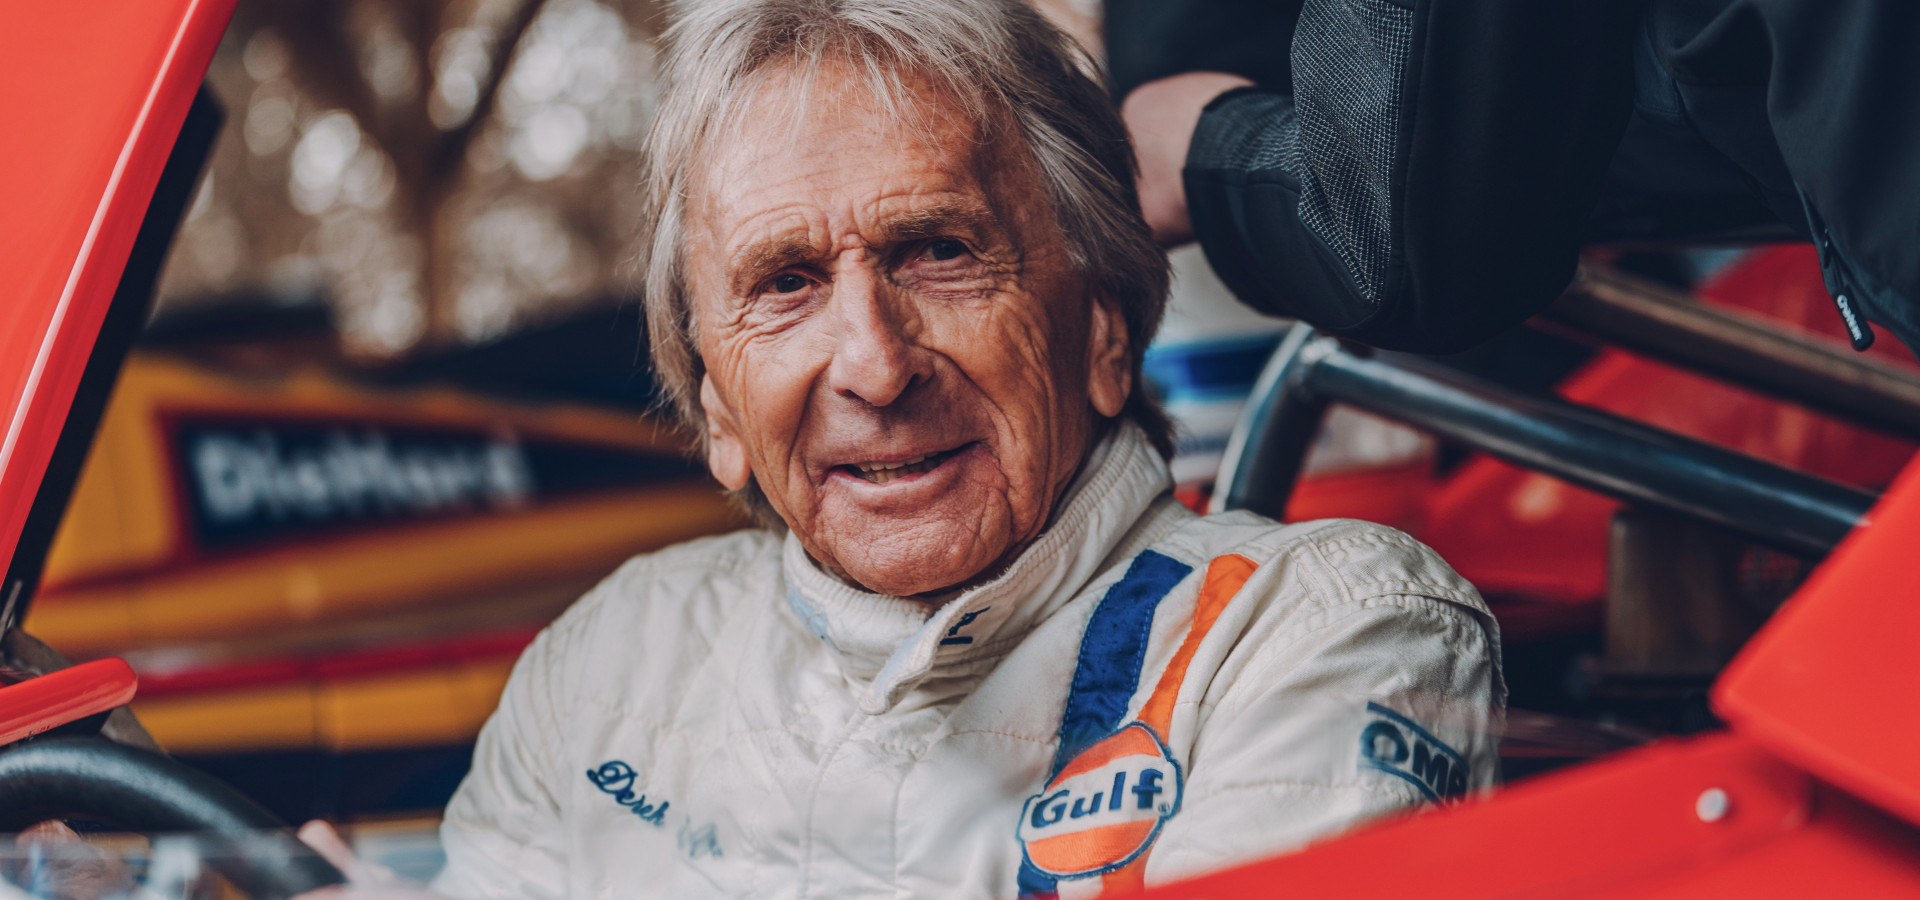 Porsche congratulates Derek Bell on his 80th birthday...